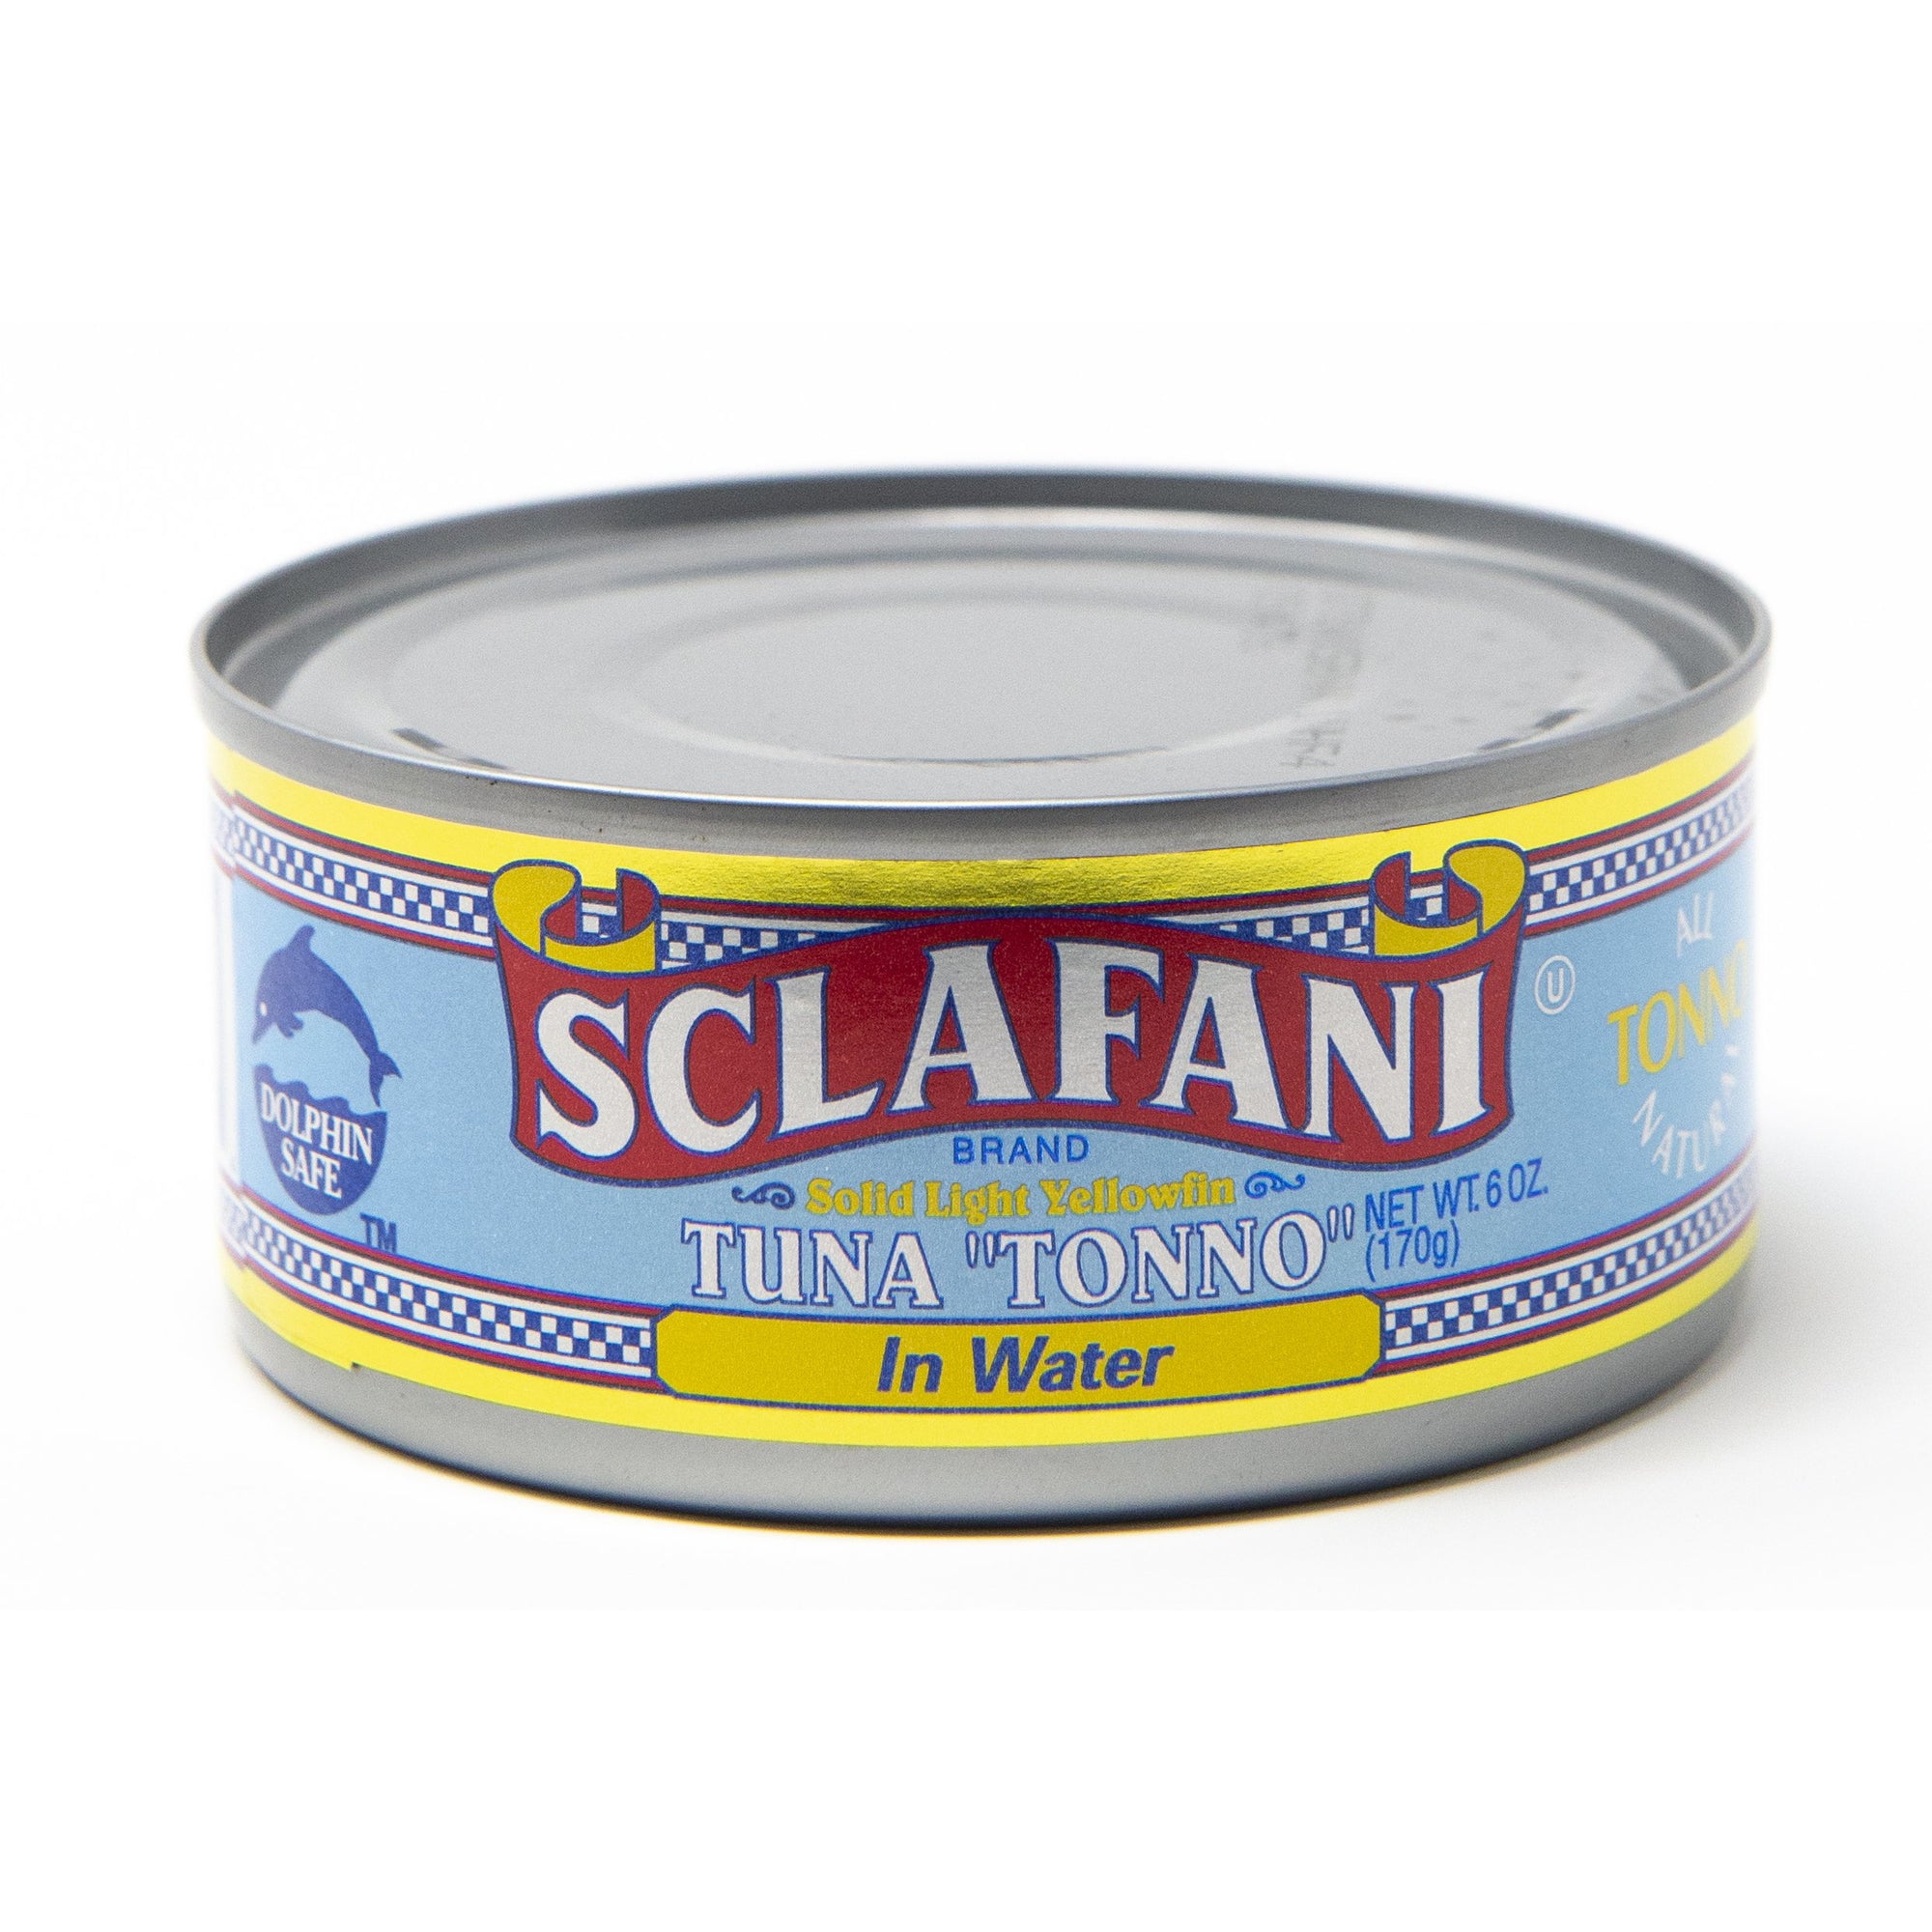 Sclafani Solid Light Tuna Fish in Water 6 oz.